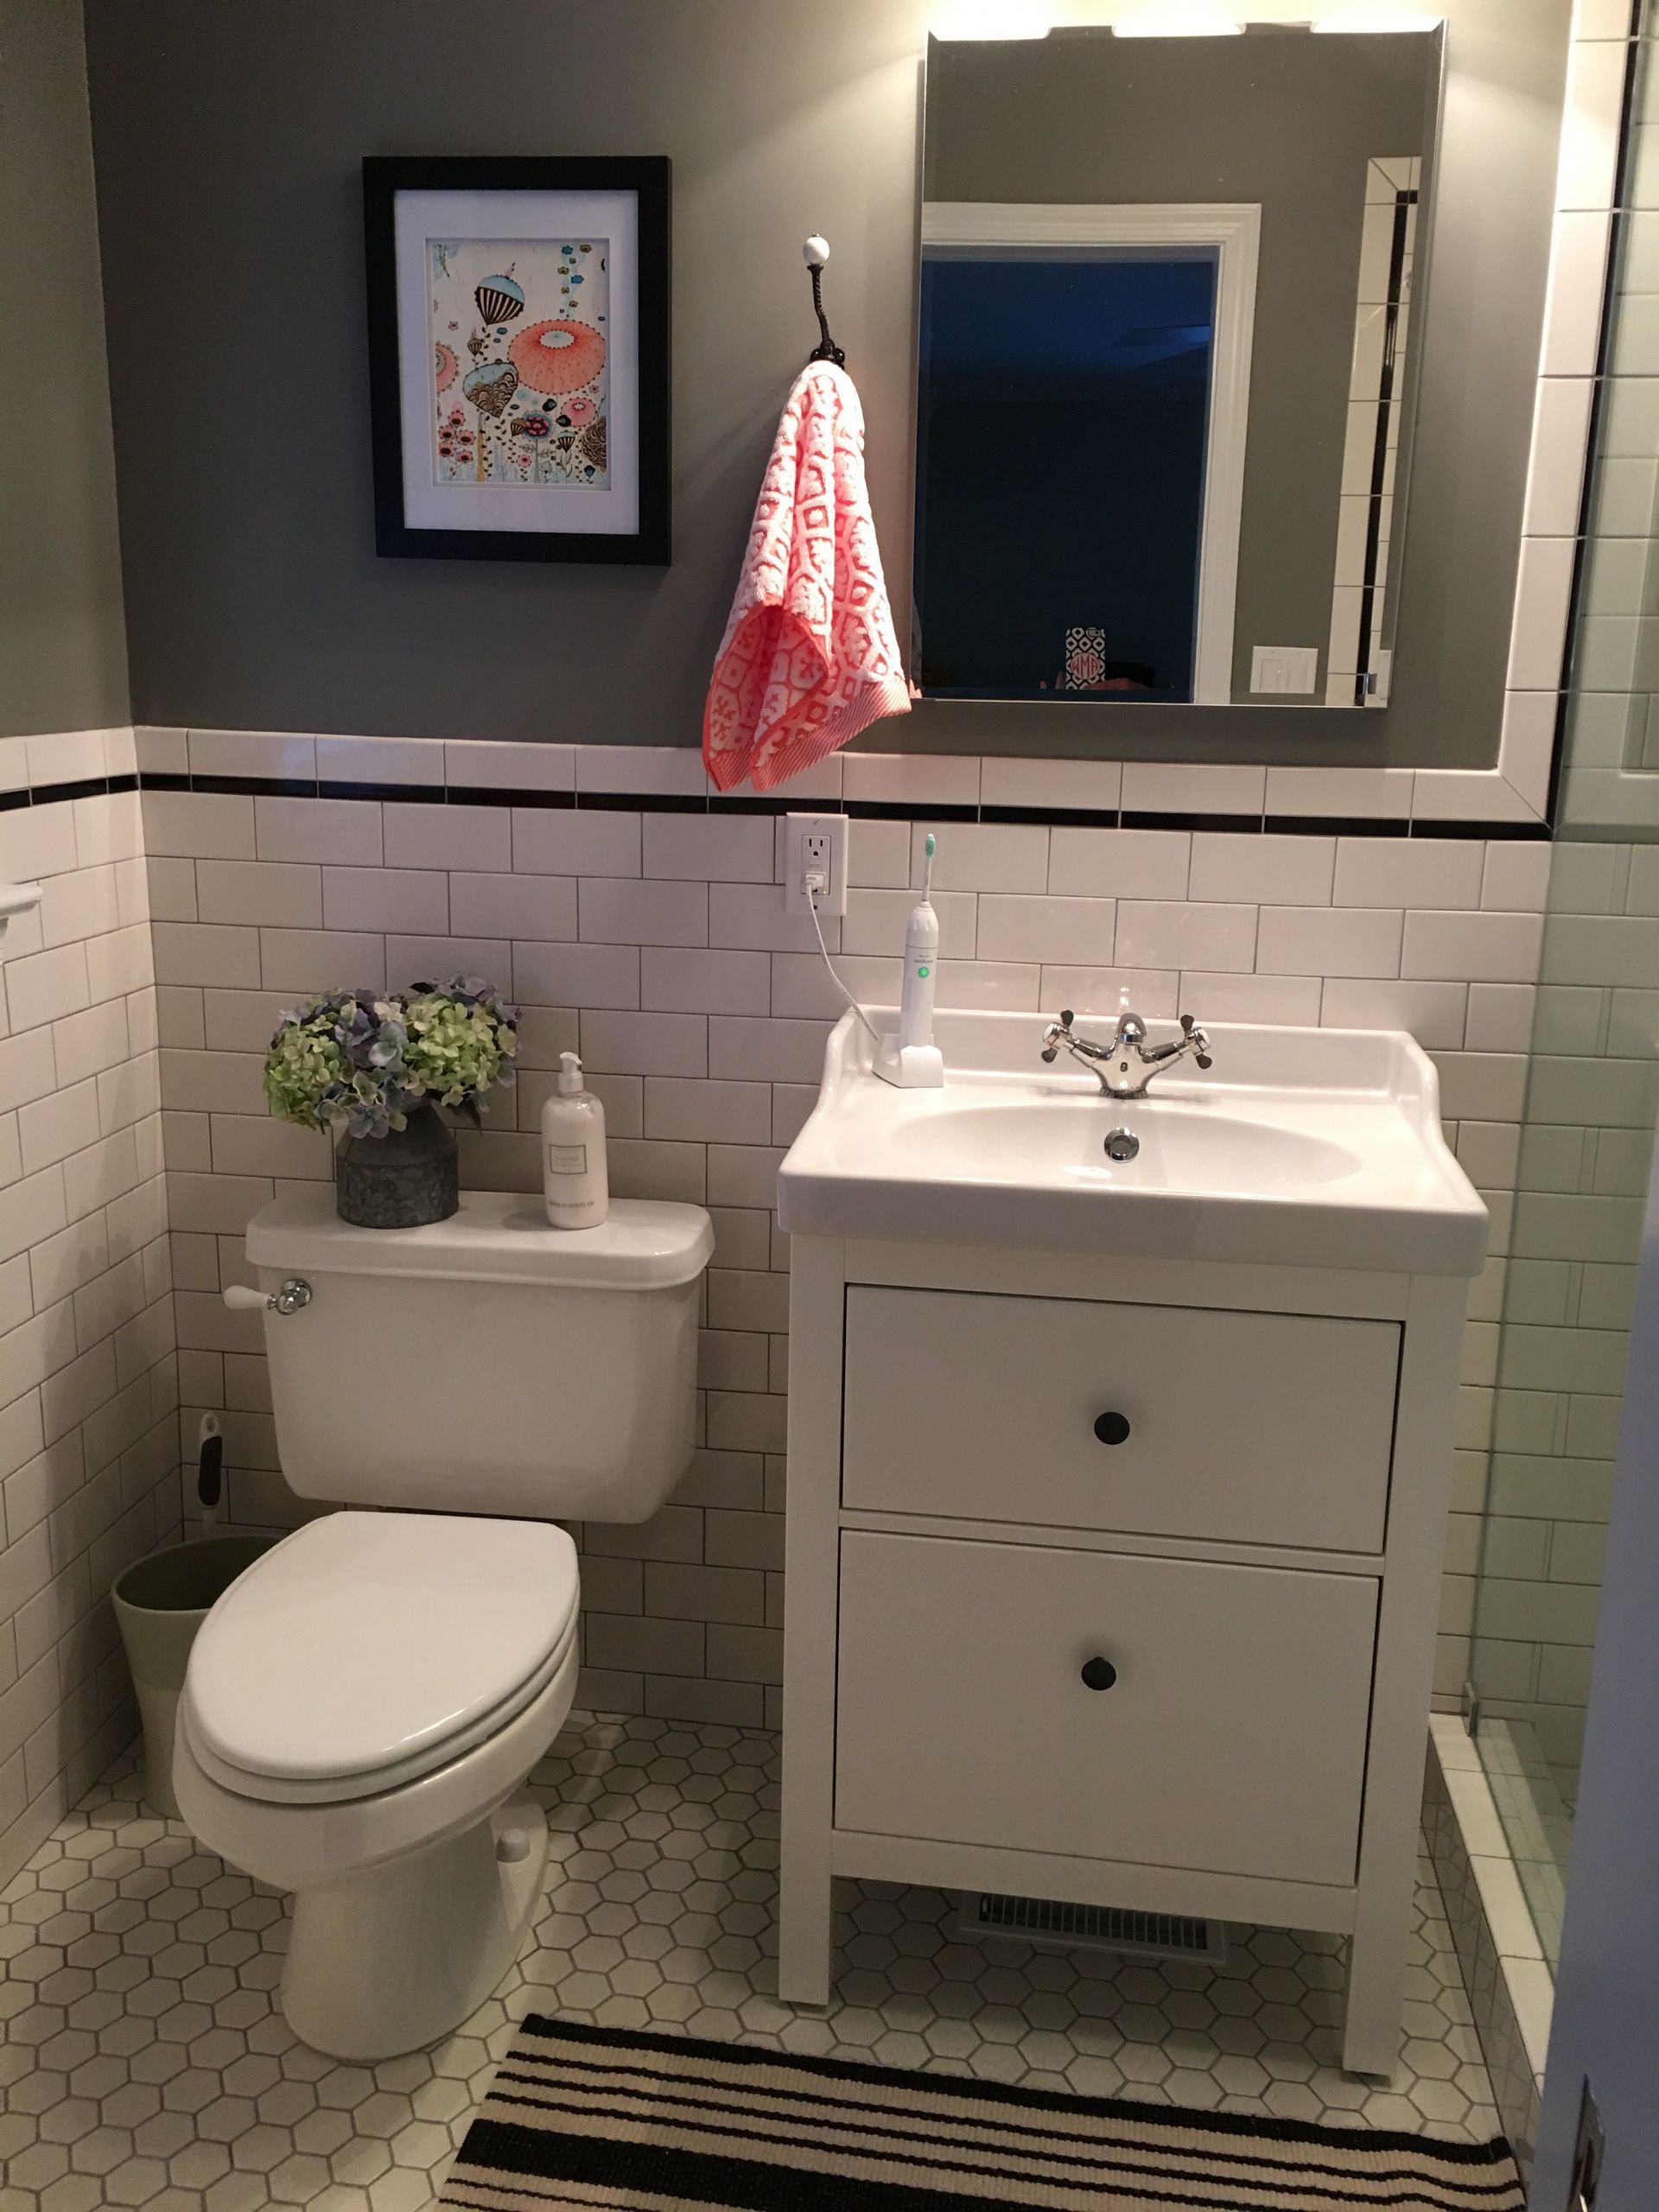 Hemnes Bathroom Vanity
 HEMNES ODENSVIK Bathroom vanity gray IKEA